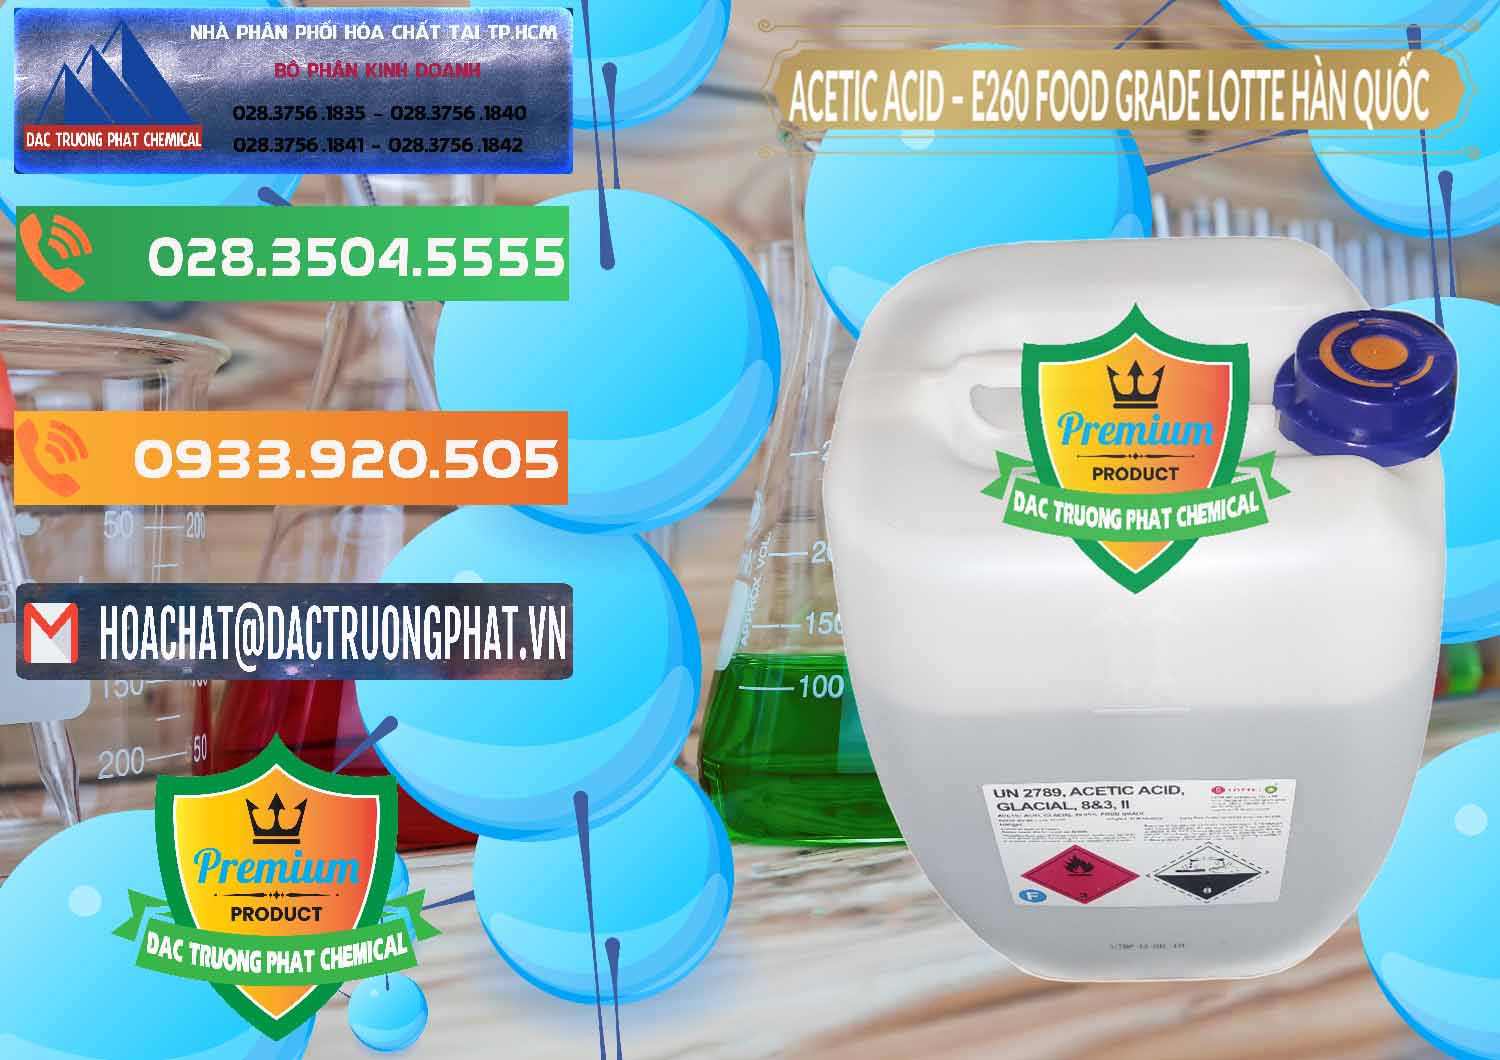 Nơi chuyên bán _ cung ứng Acetic Acid – Axit Acetic E260 Food Grade Hàn Quốc Lotte Korea - 0003 - Đơn vị chuyên cung cấp và kinh doanh hóa chất tại TP.HCM - hoachatxulynuoc.com.vn